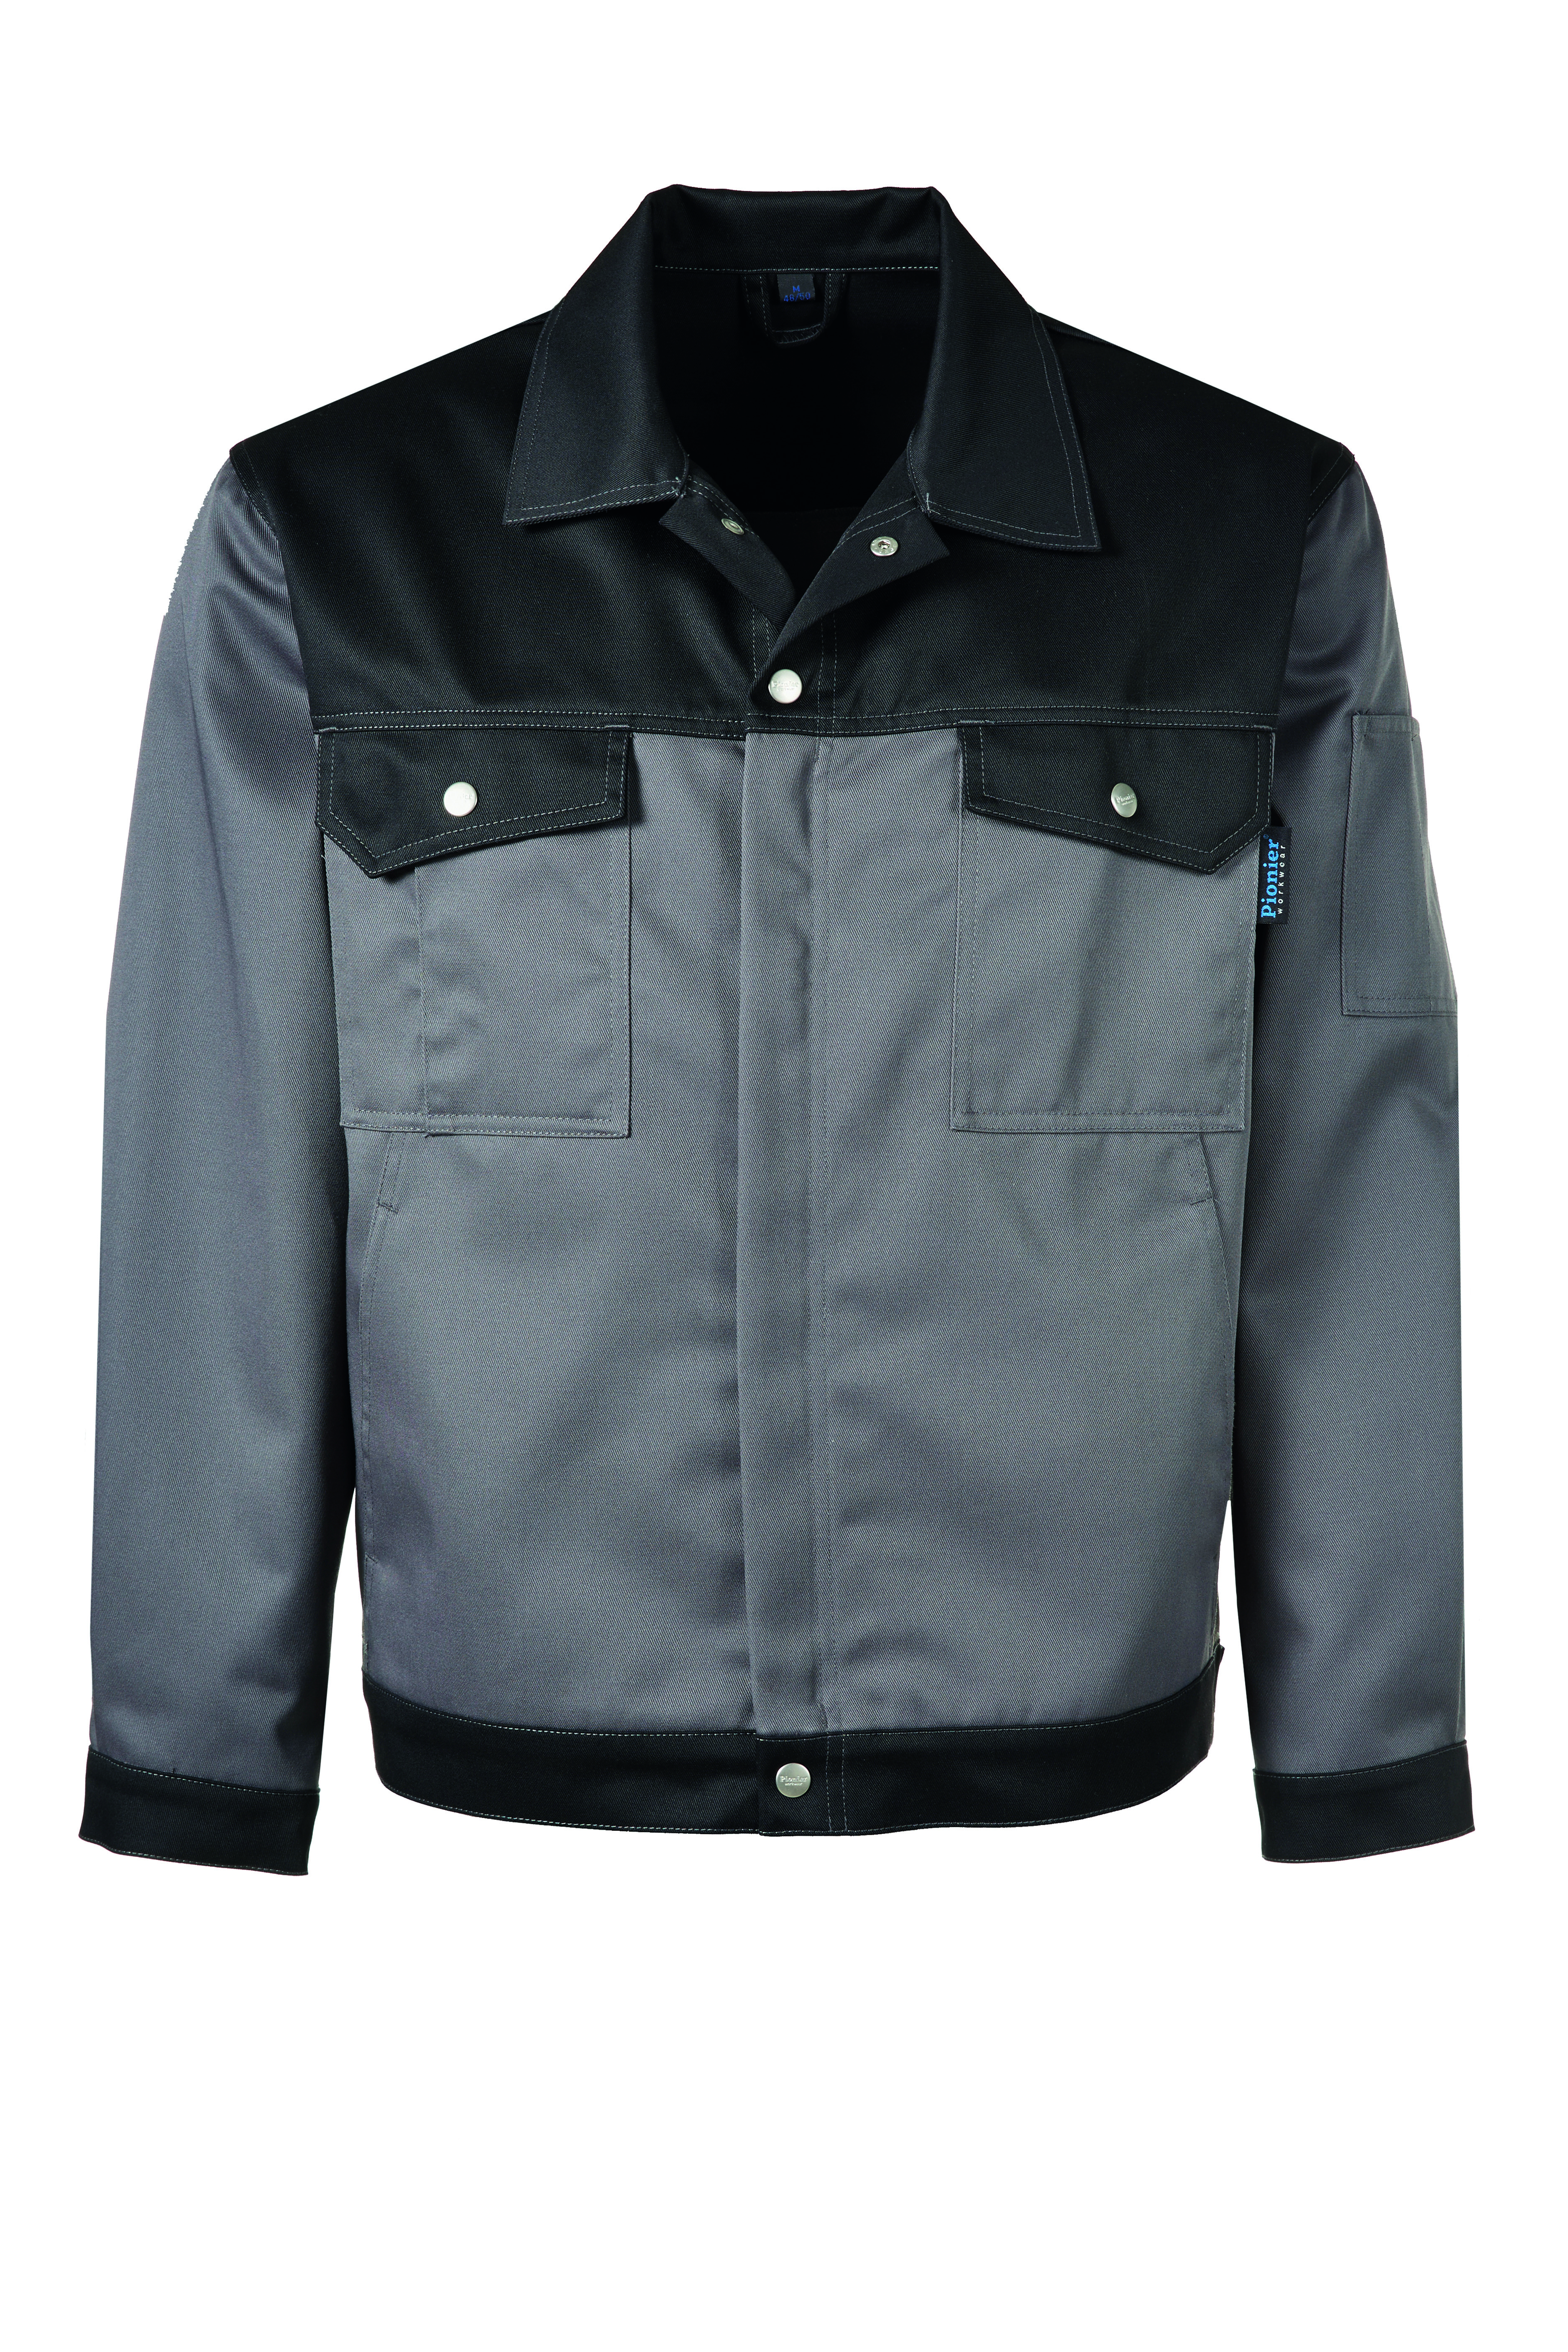 PIONIER Bundjacke Arbeitsjacke Berufsjacke Schutzjacke Arbeitskleidung Berufskleidung grau schwarz